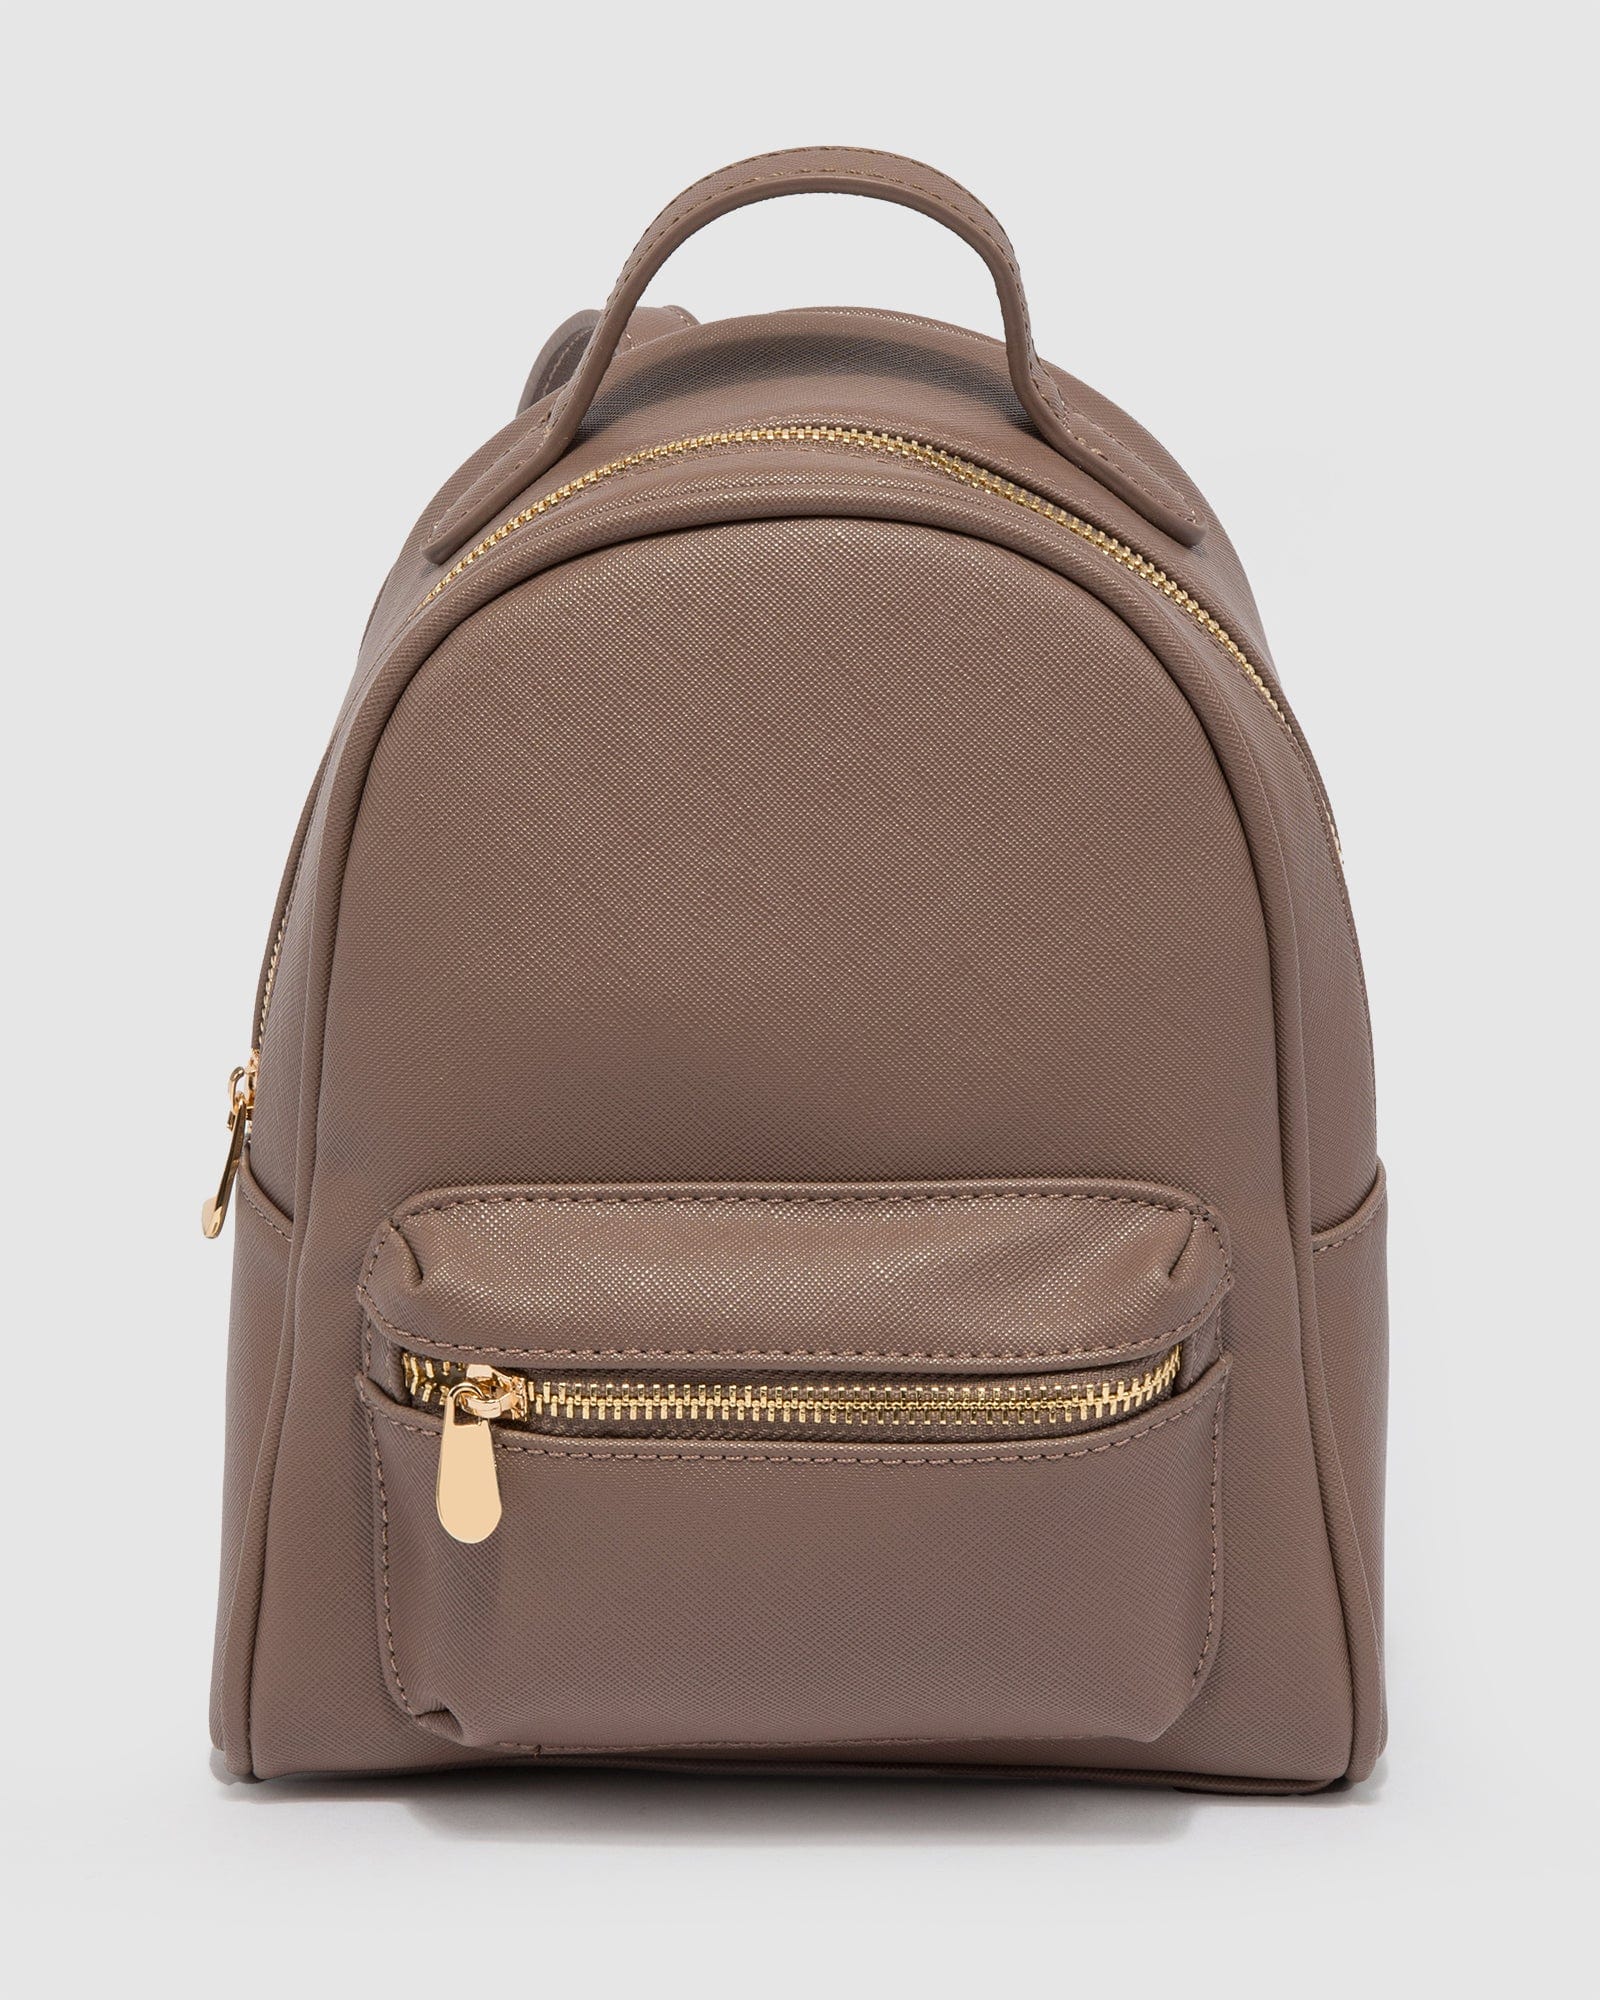 Designer Backpacks for Women | Vegan Leather & Mini Backpacks 